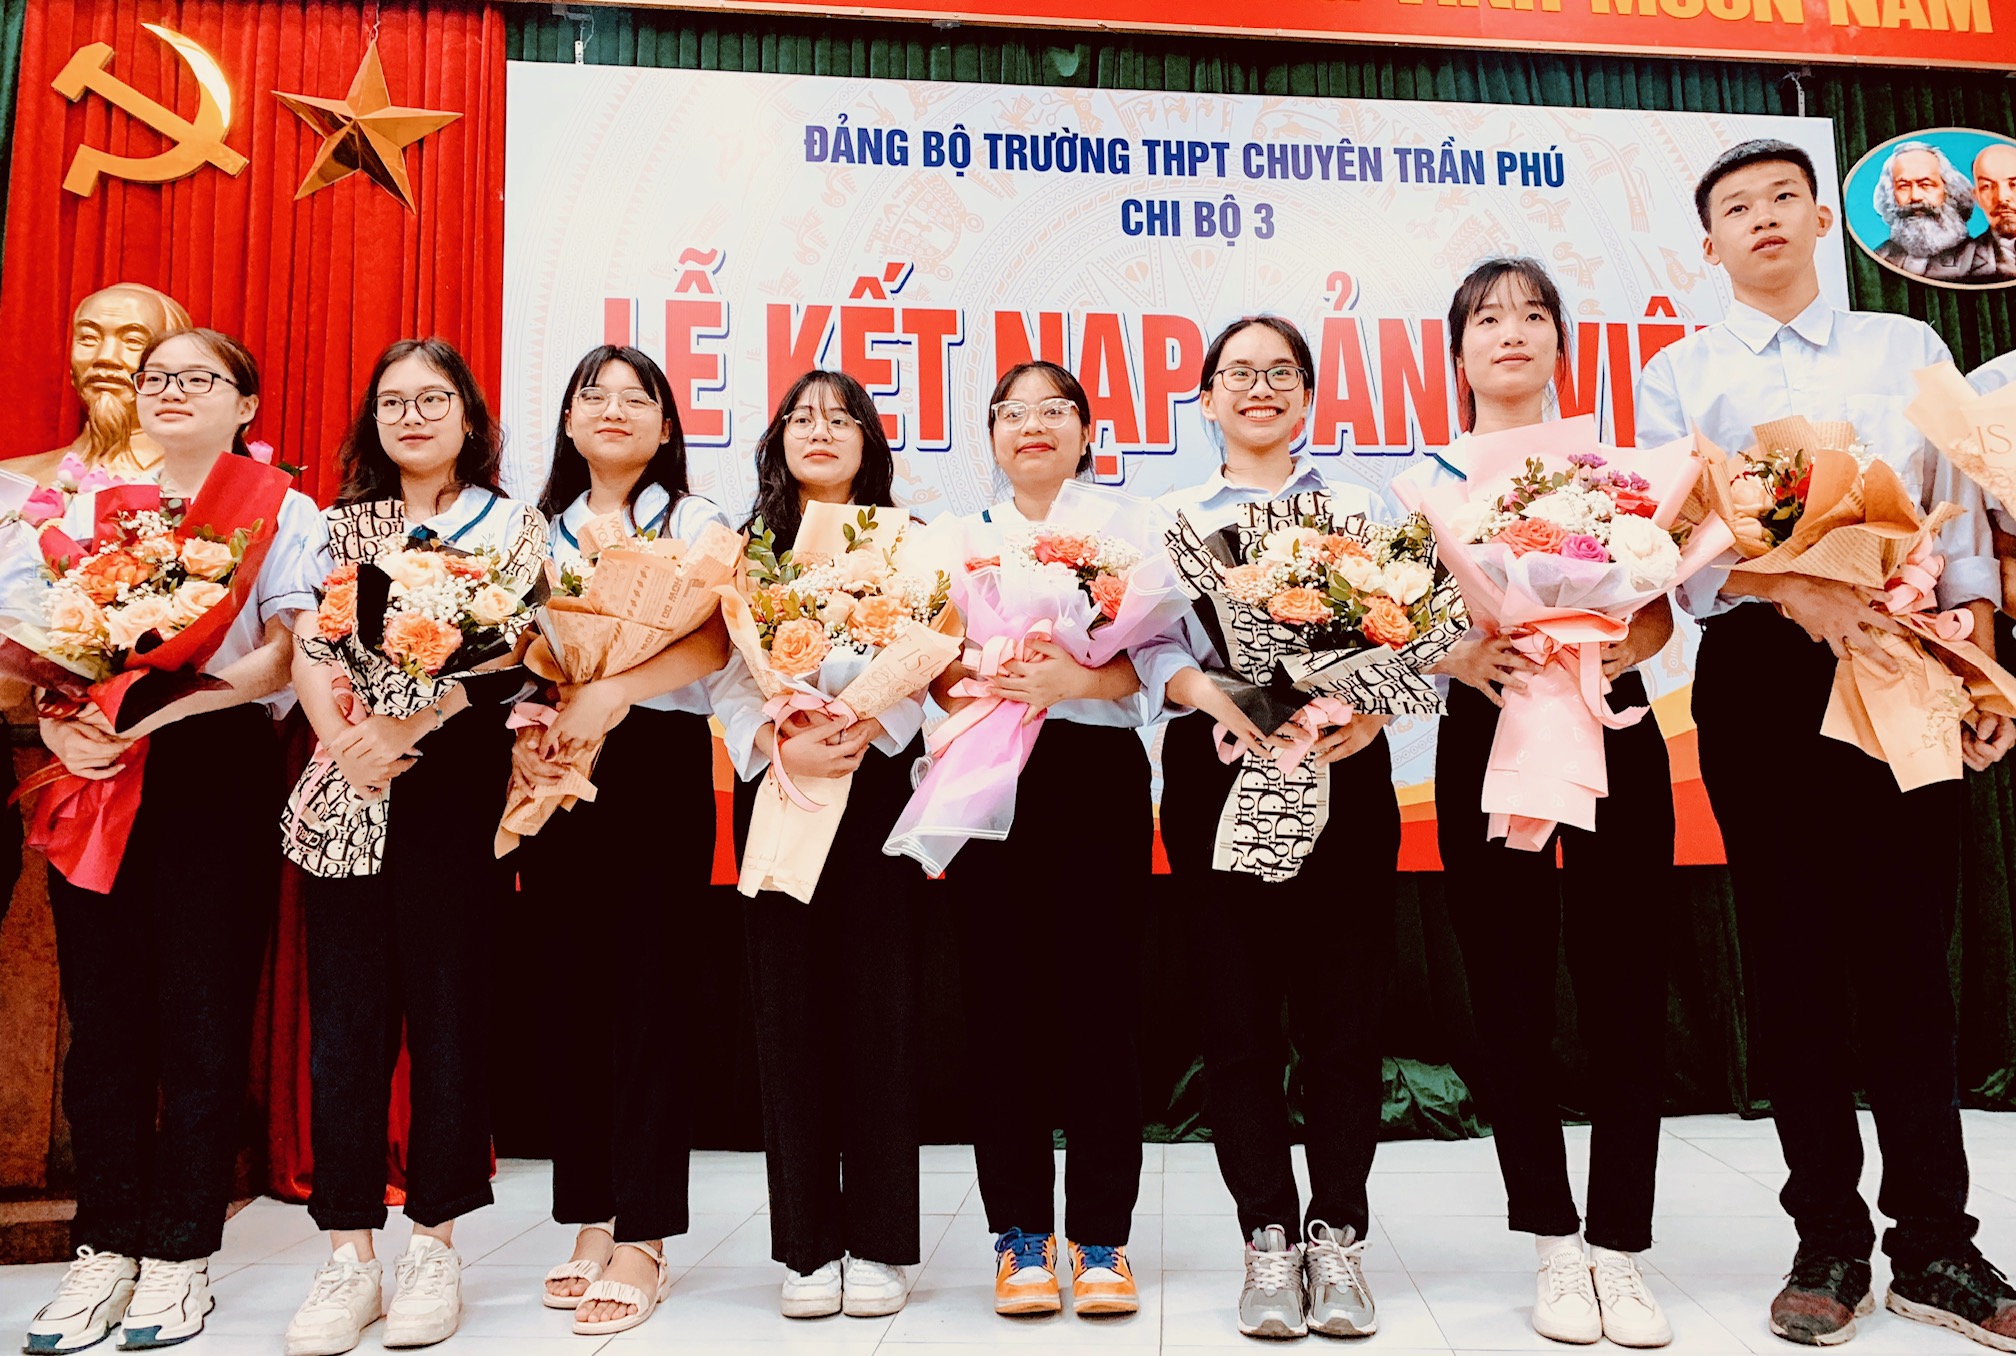 Các học sinh Trường trung học phổ thông chuyên Trần Phú vinh dự được kết nạp Đảng.